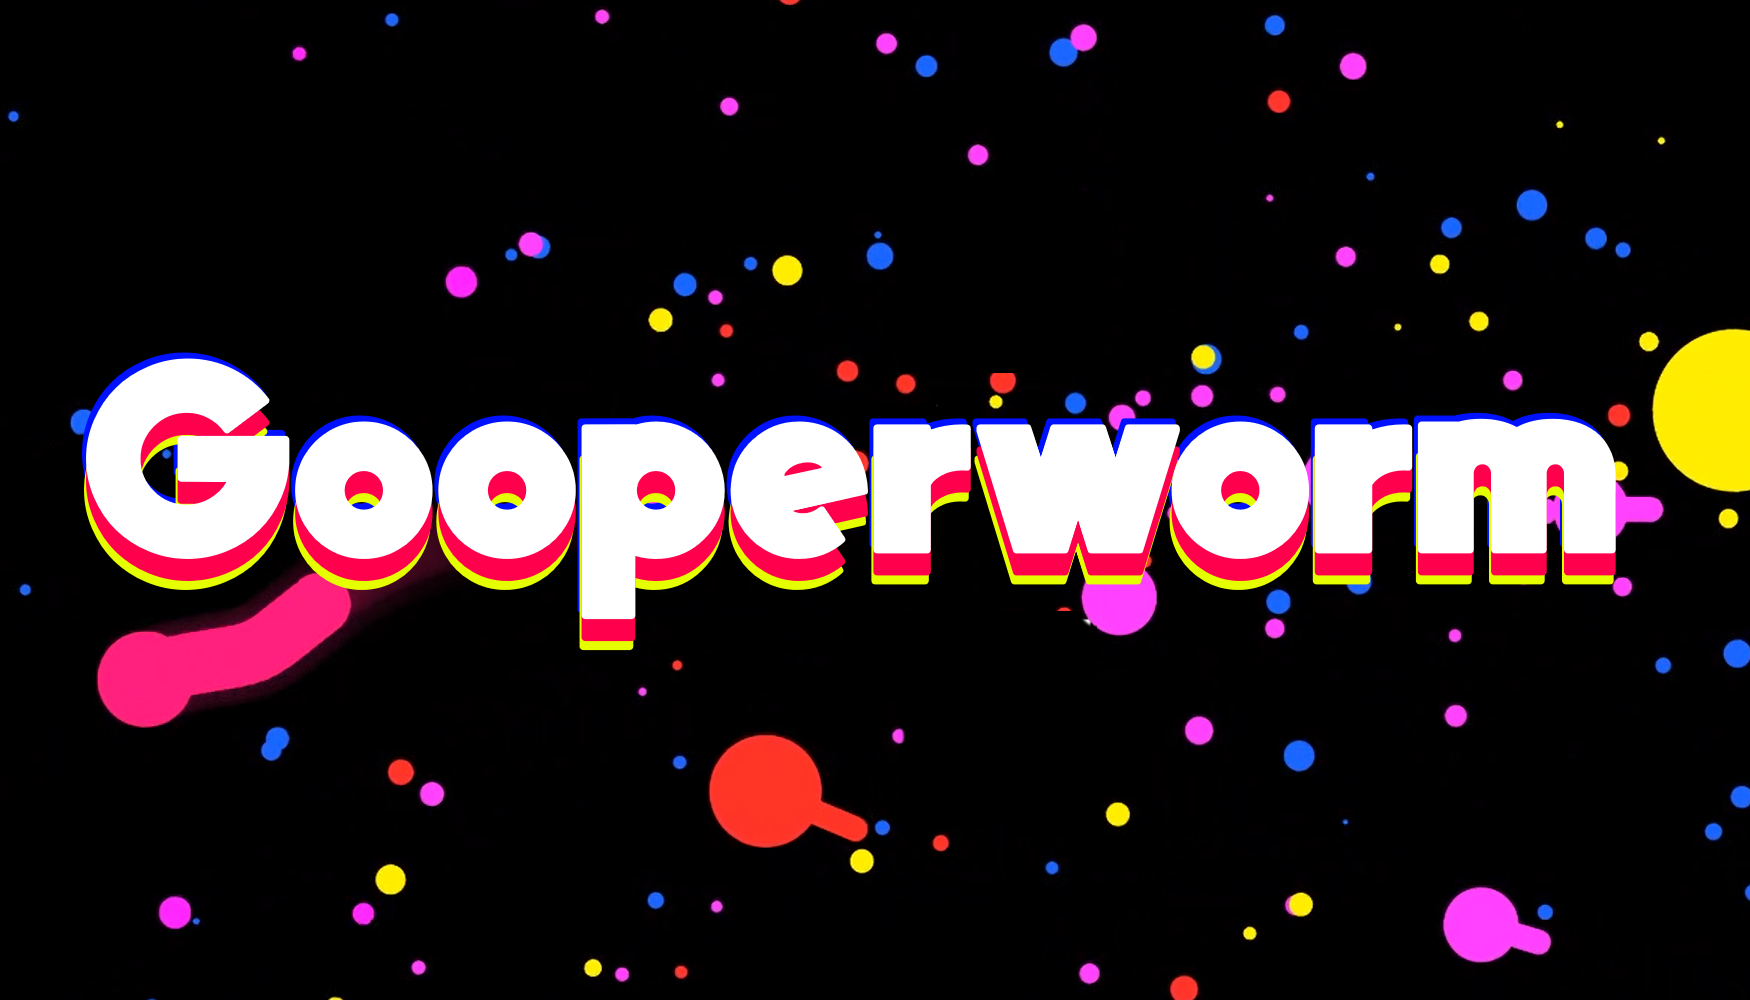 Gooperworm